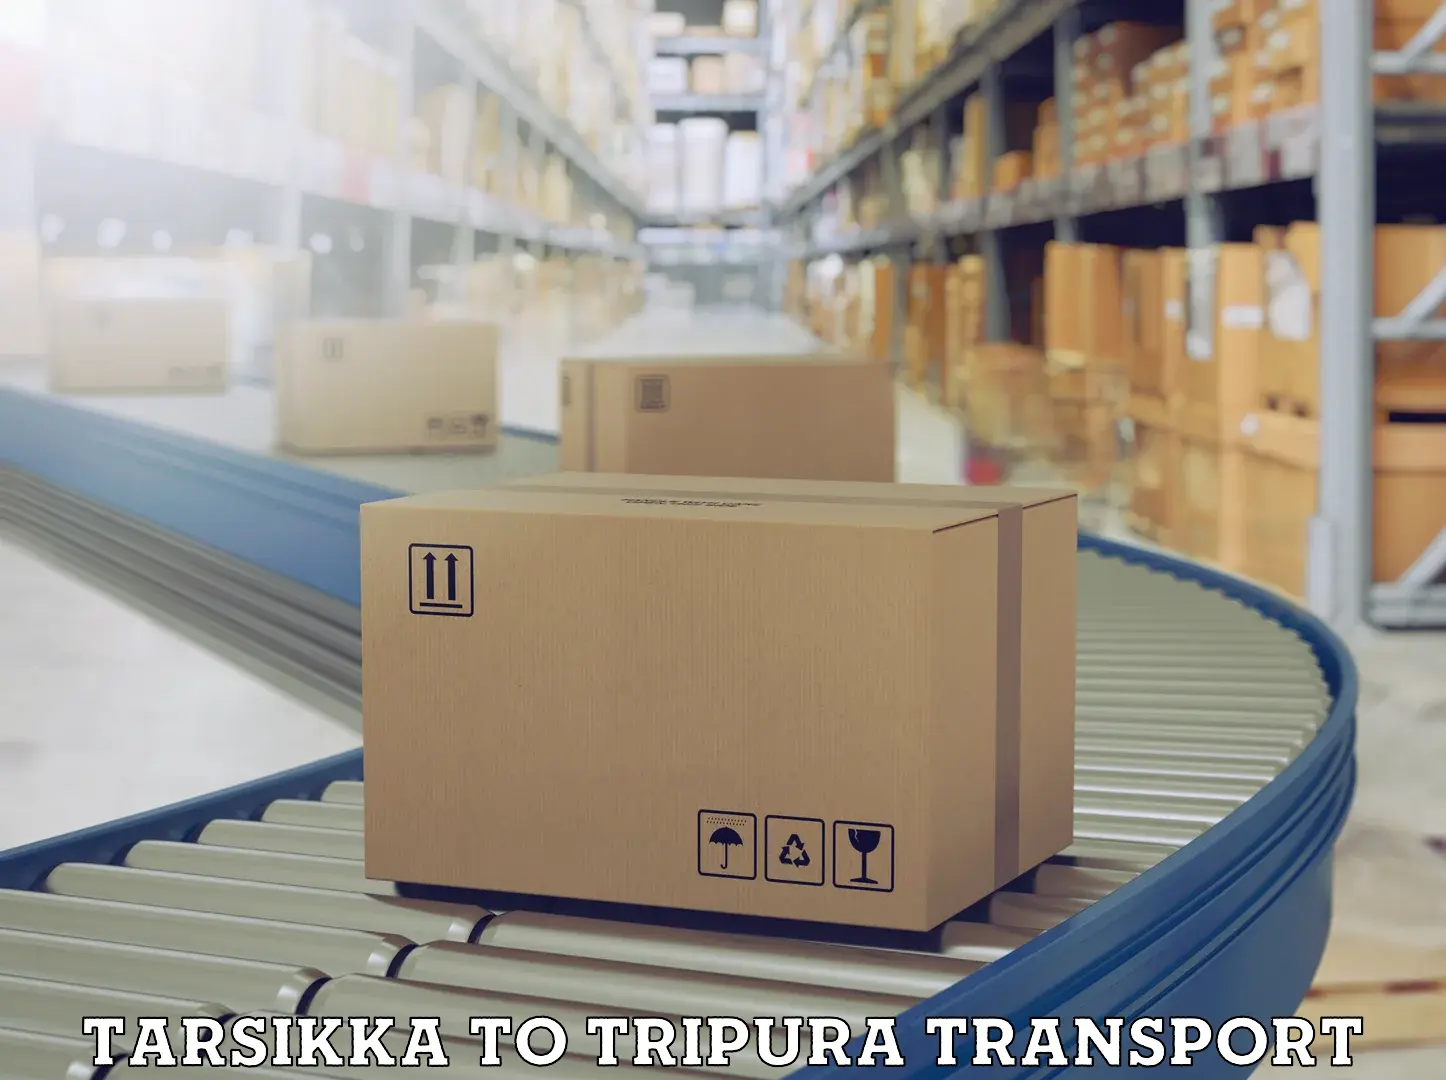 Transportation services Tarsikka to Teliamura